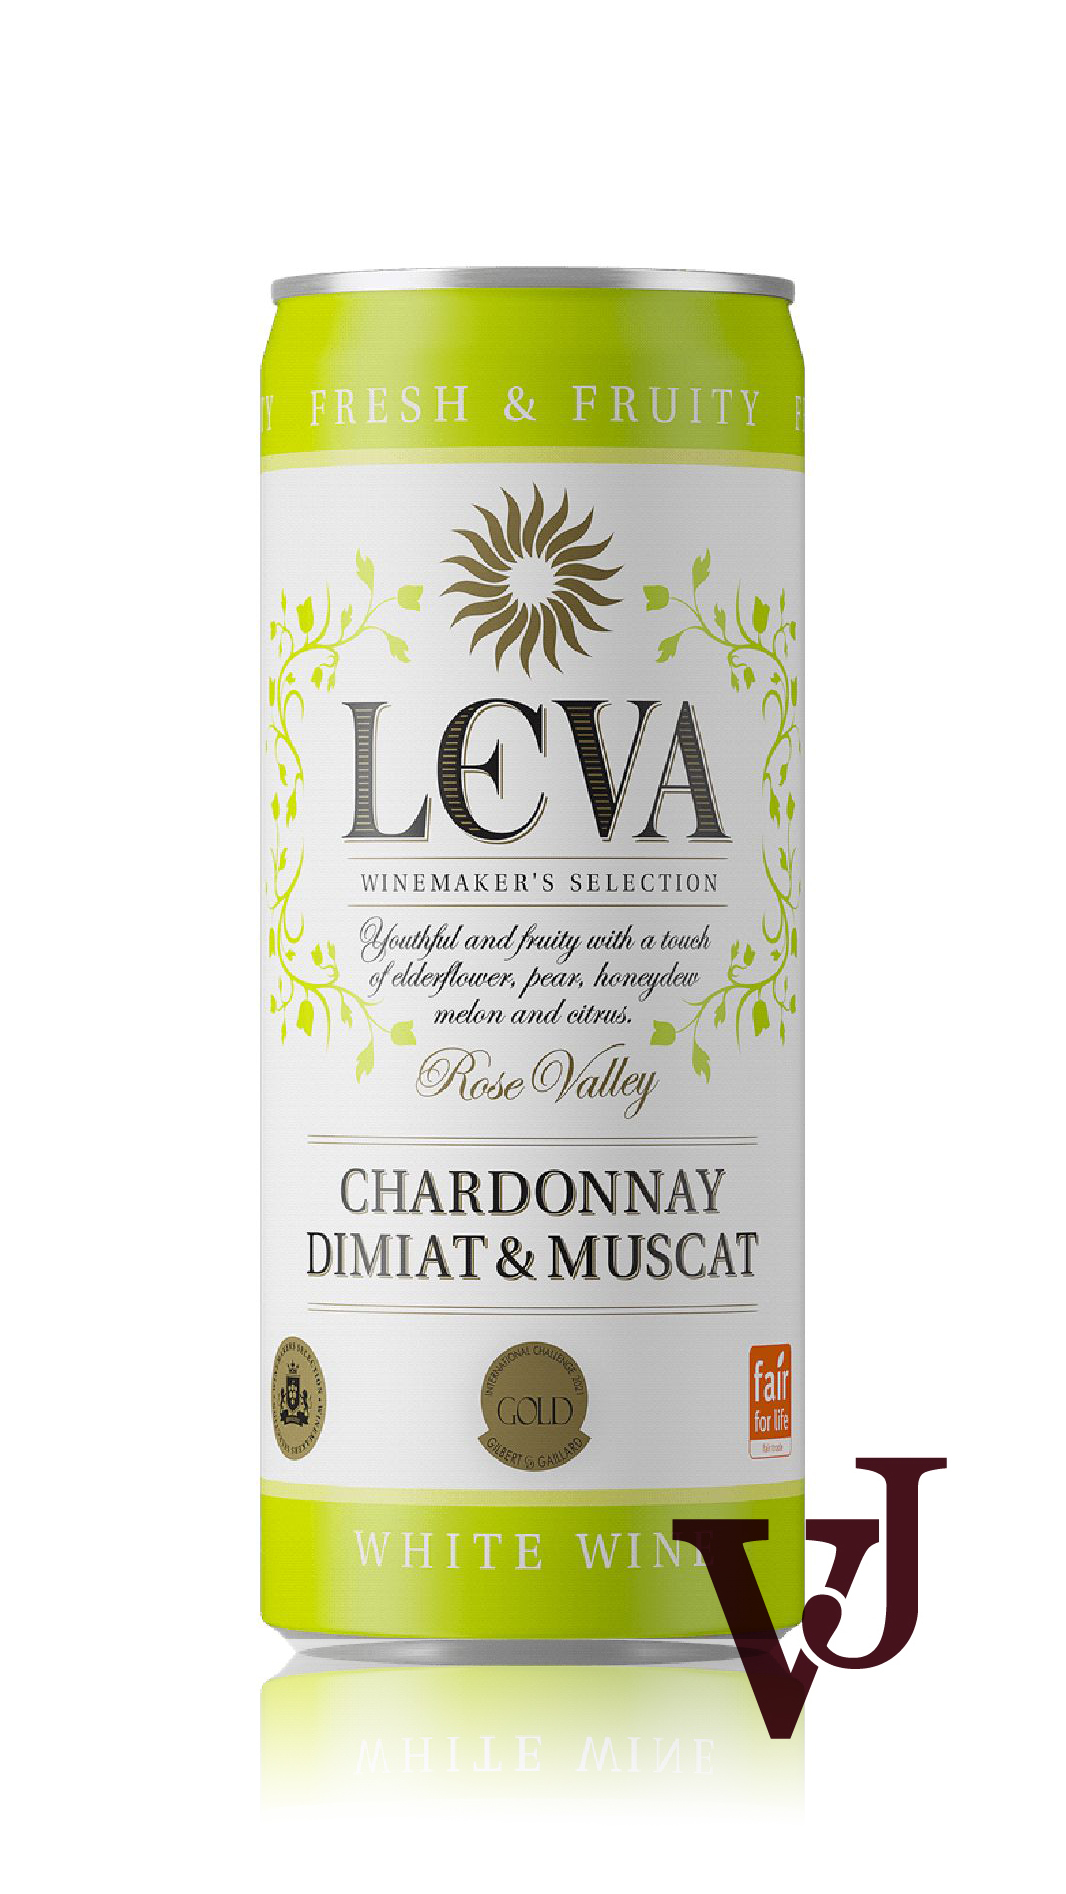 Vitt Vin - Leva Chardonnay Dimiat & Muscat artikel nummer 261915 från producenten Vinex Slavyantsi från området Bulgarien